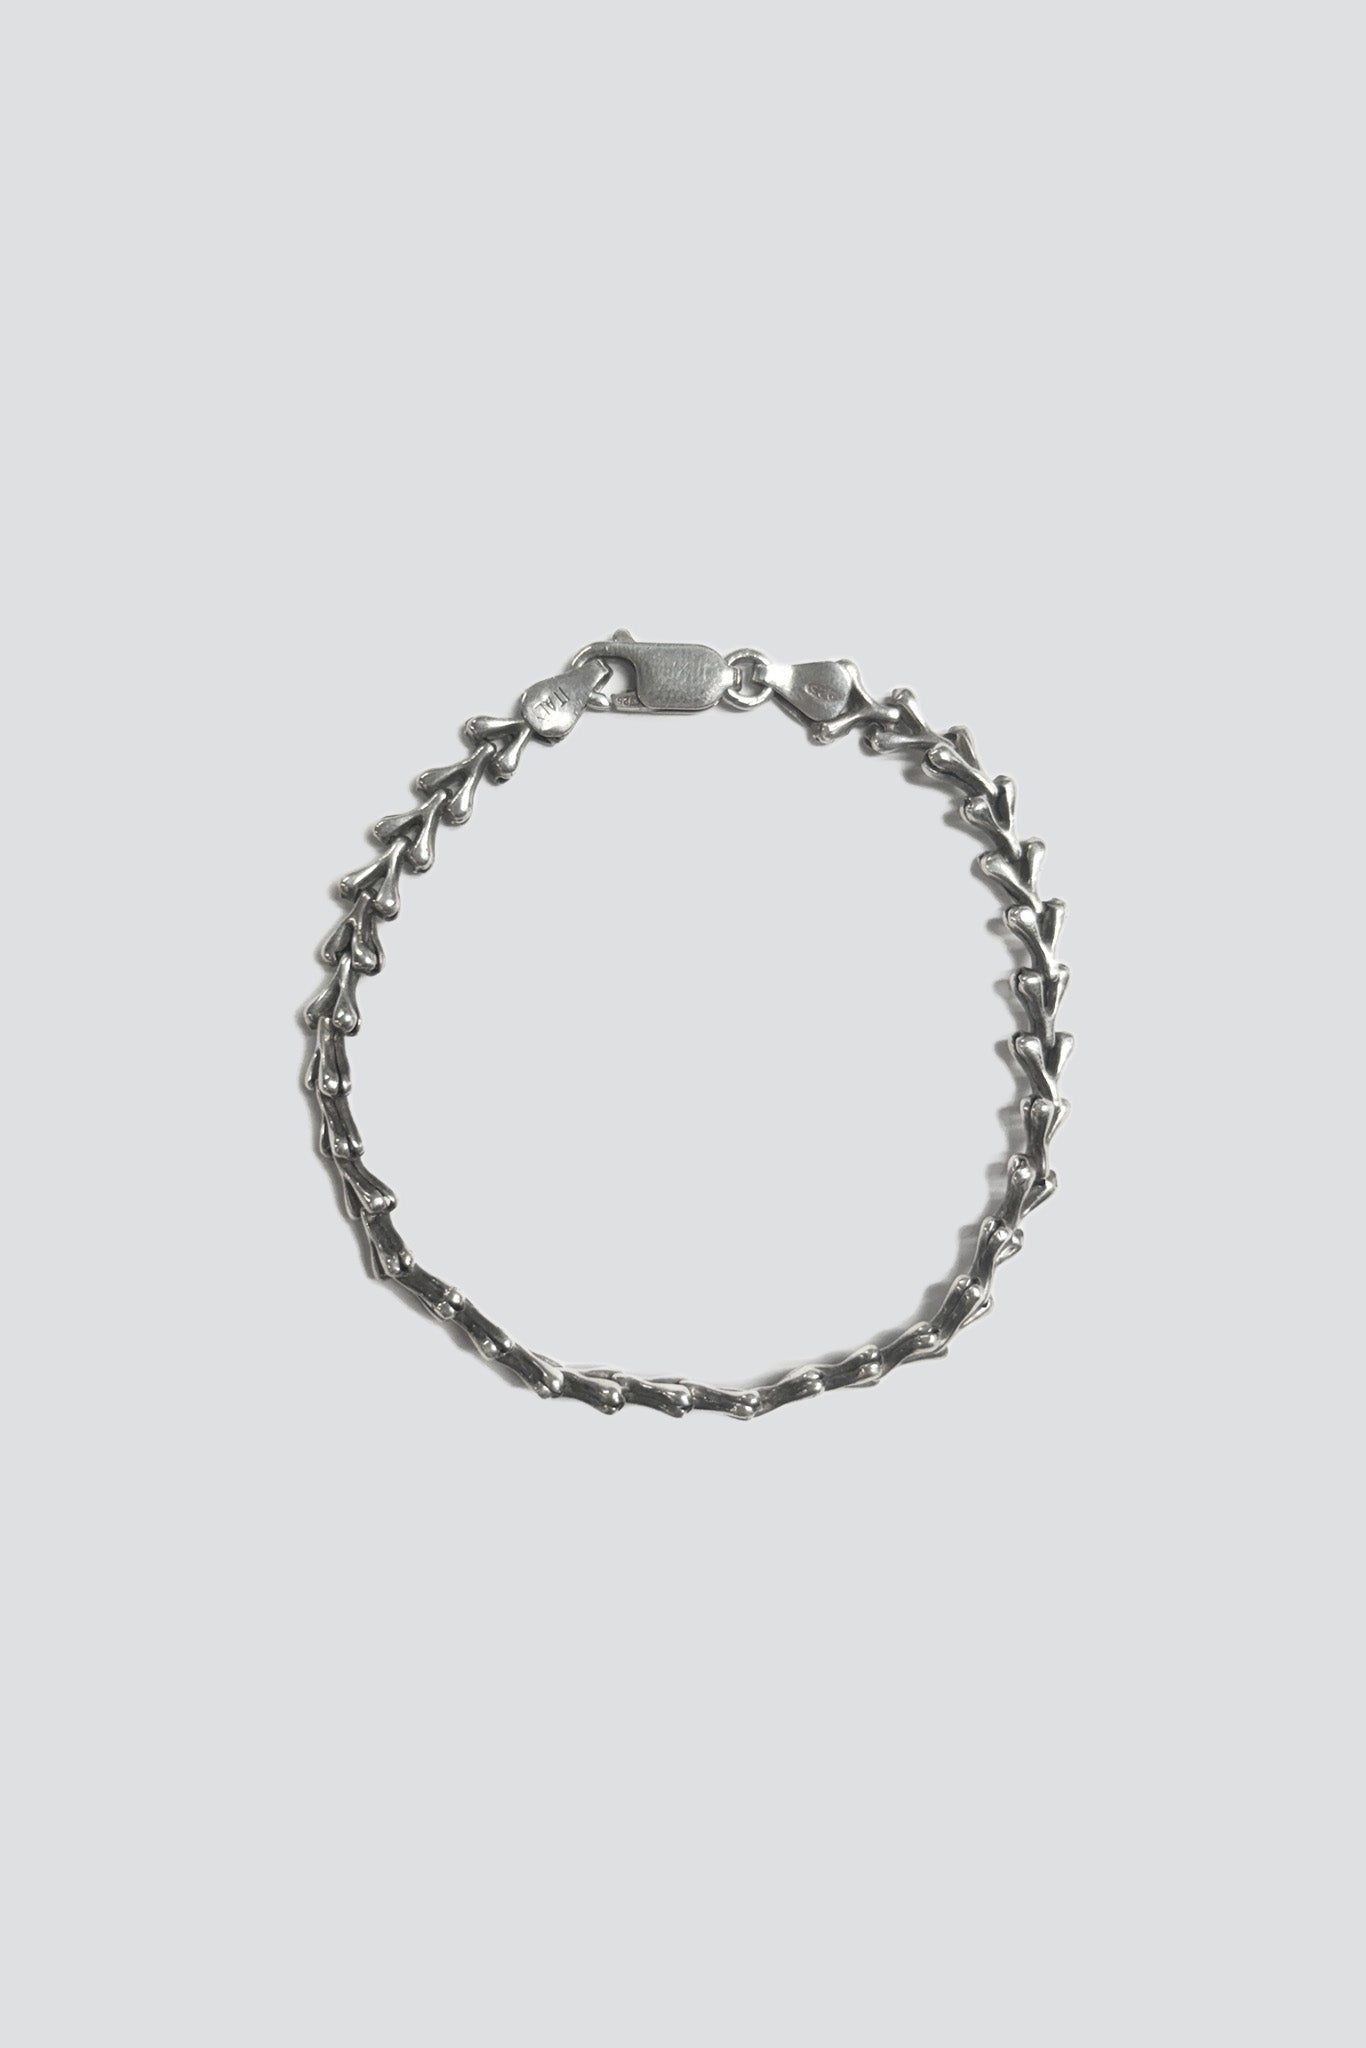 Sterling Silver Wishbone Bracelet